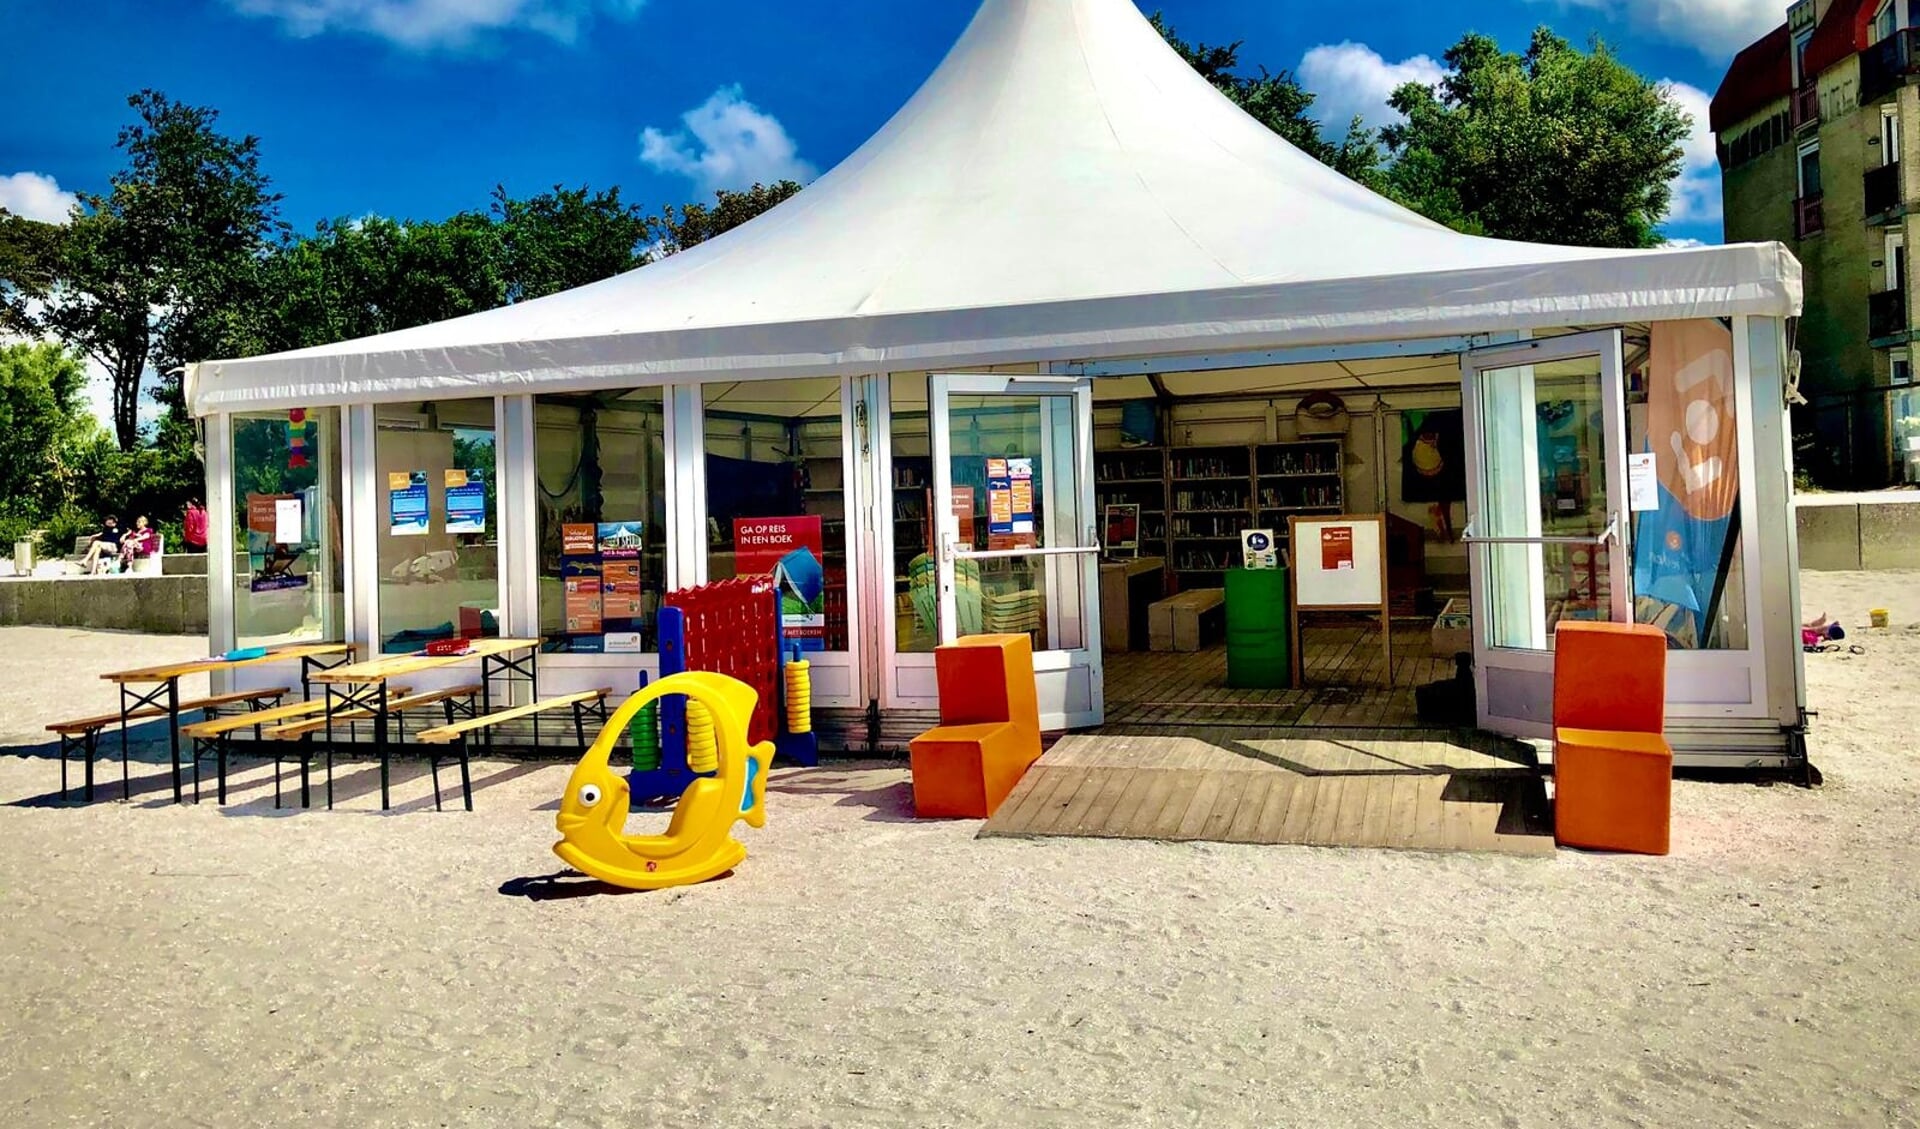 De enige echte strandbibliotheek van Nederland gaat weer open! Voor het vijftiende jaar op rij: een succesformule.